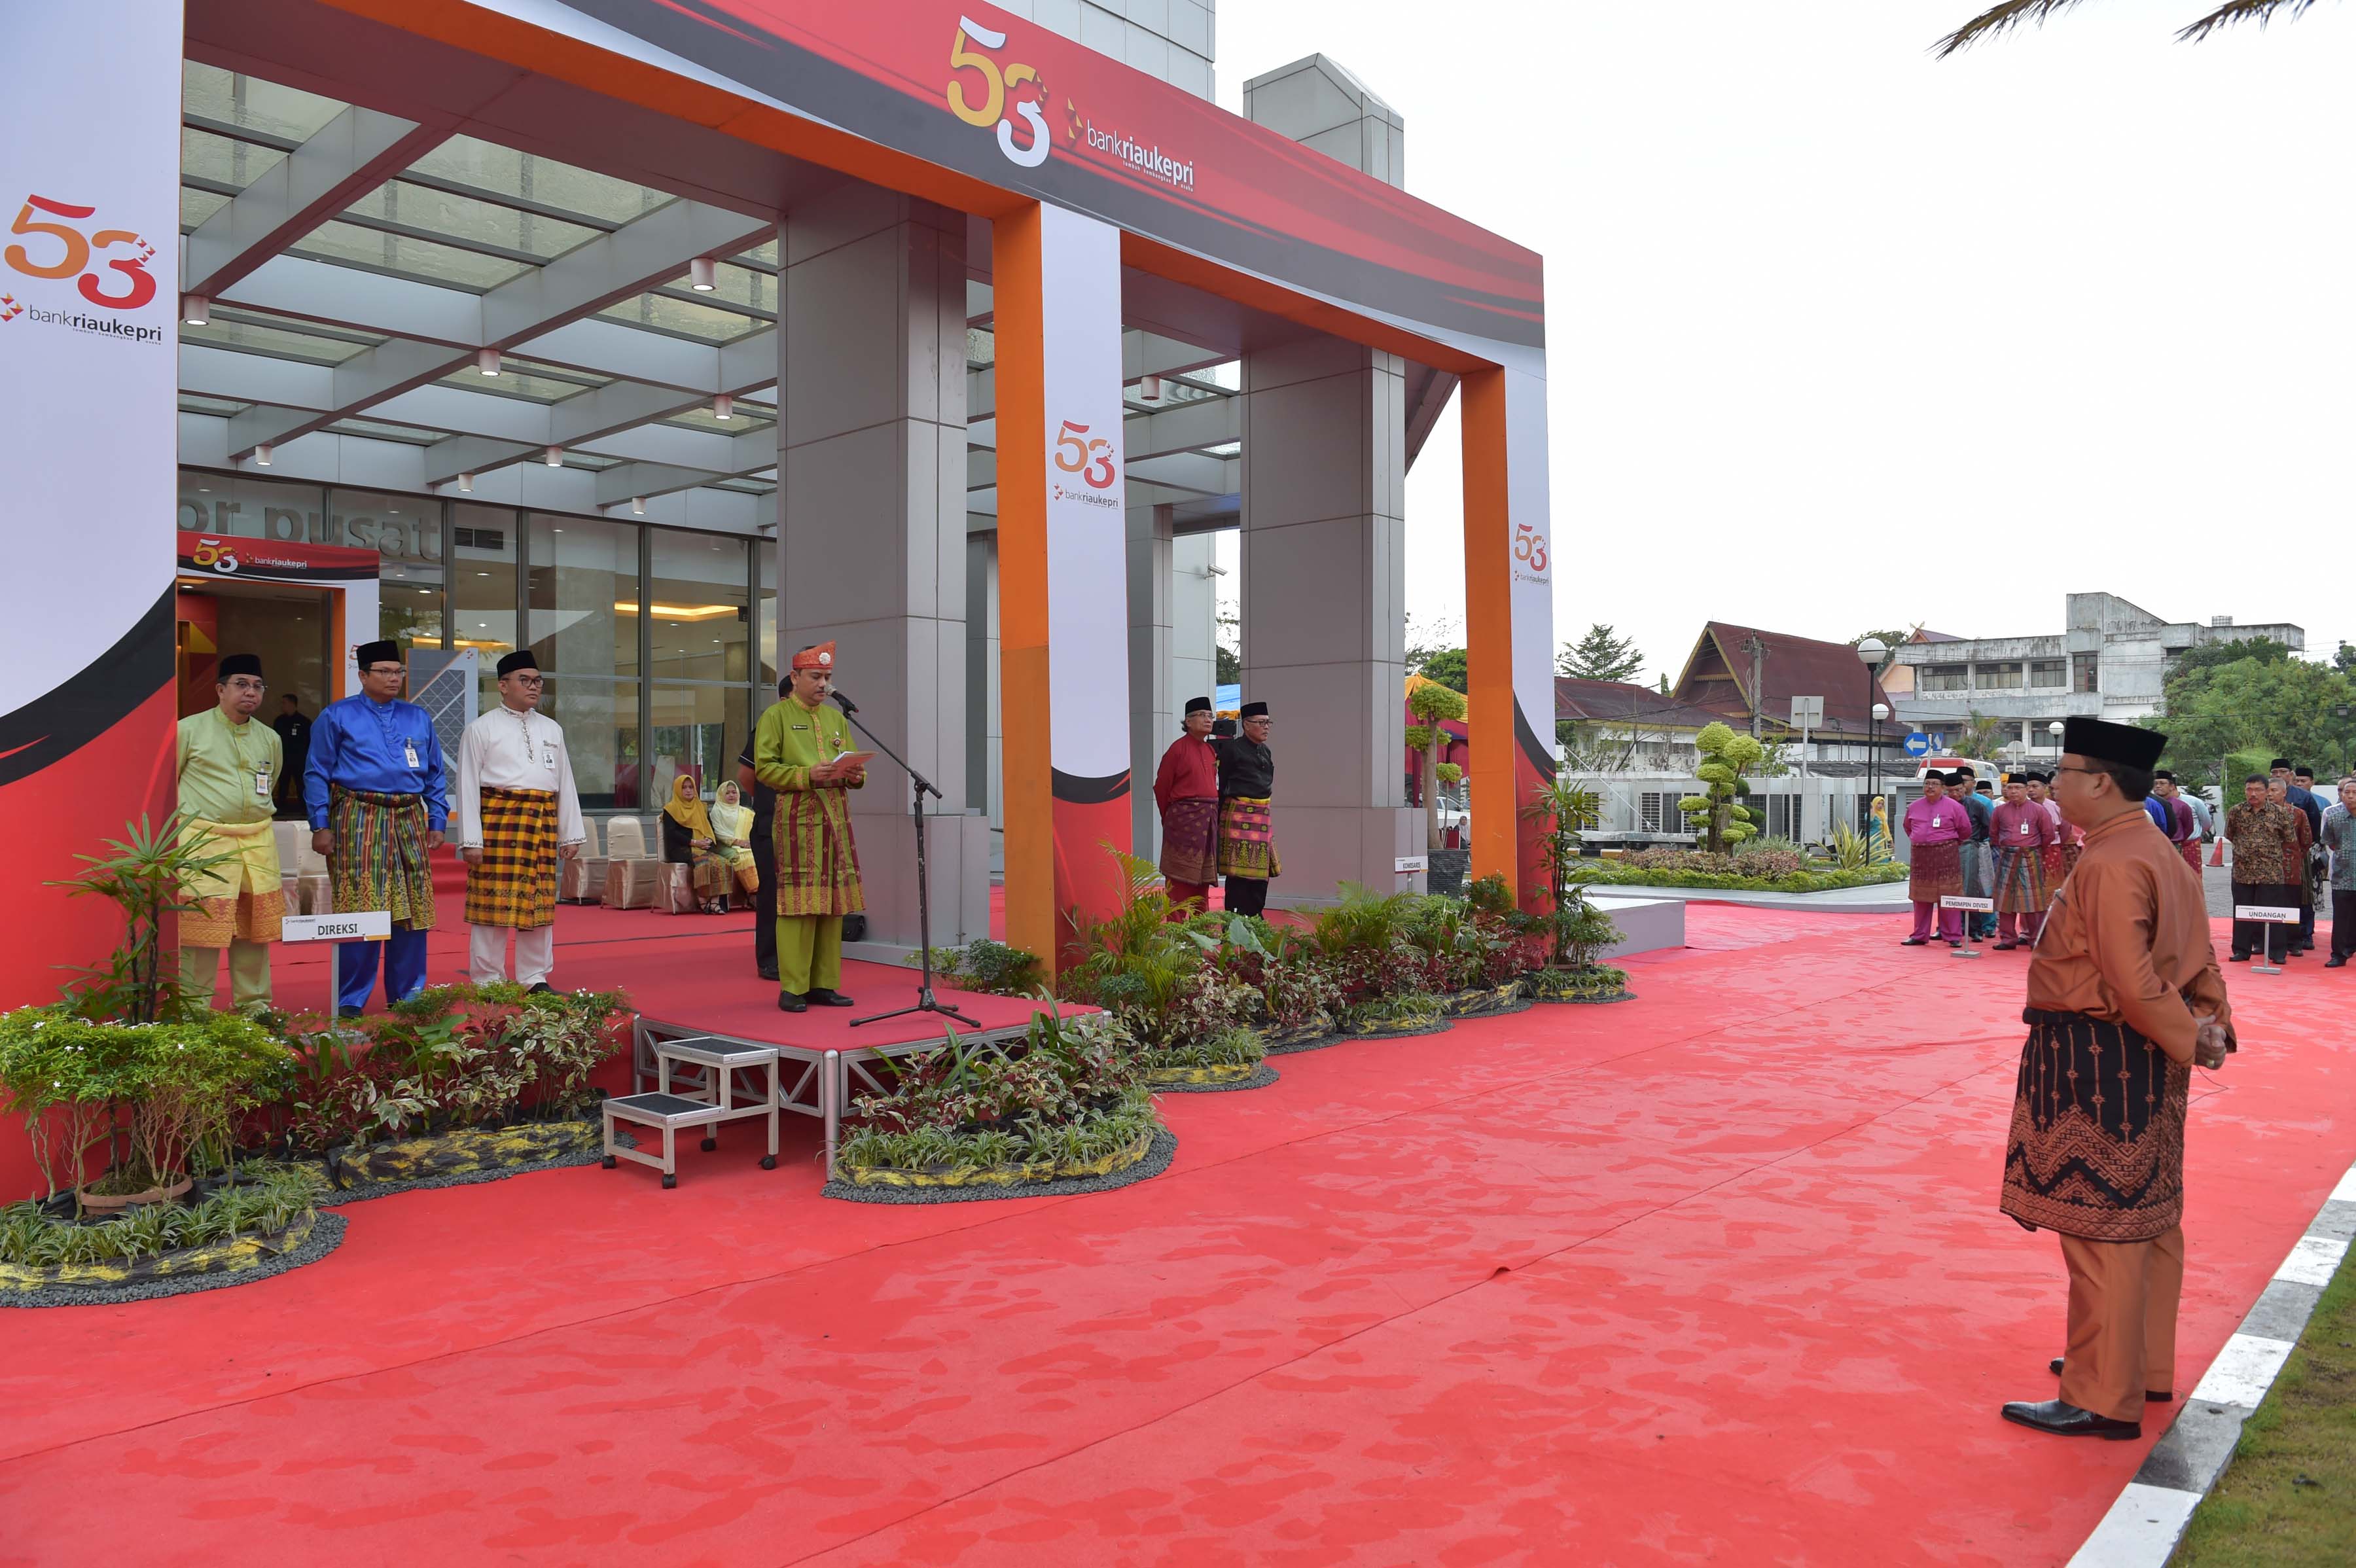 Penyelenggaraan upacara sempena Hari Ulang Tahun Bank Riau Kepri ke-53